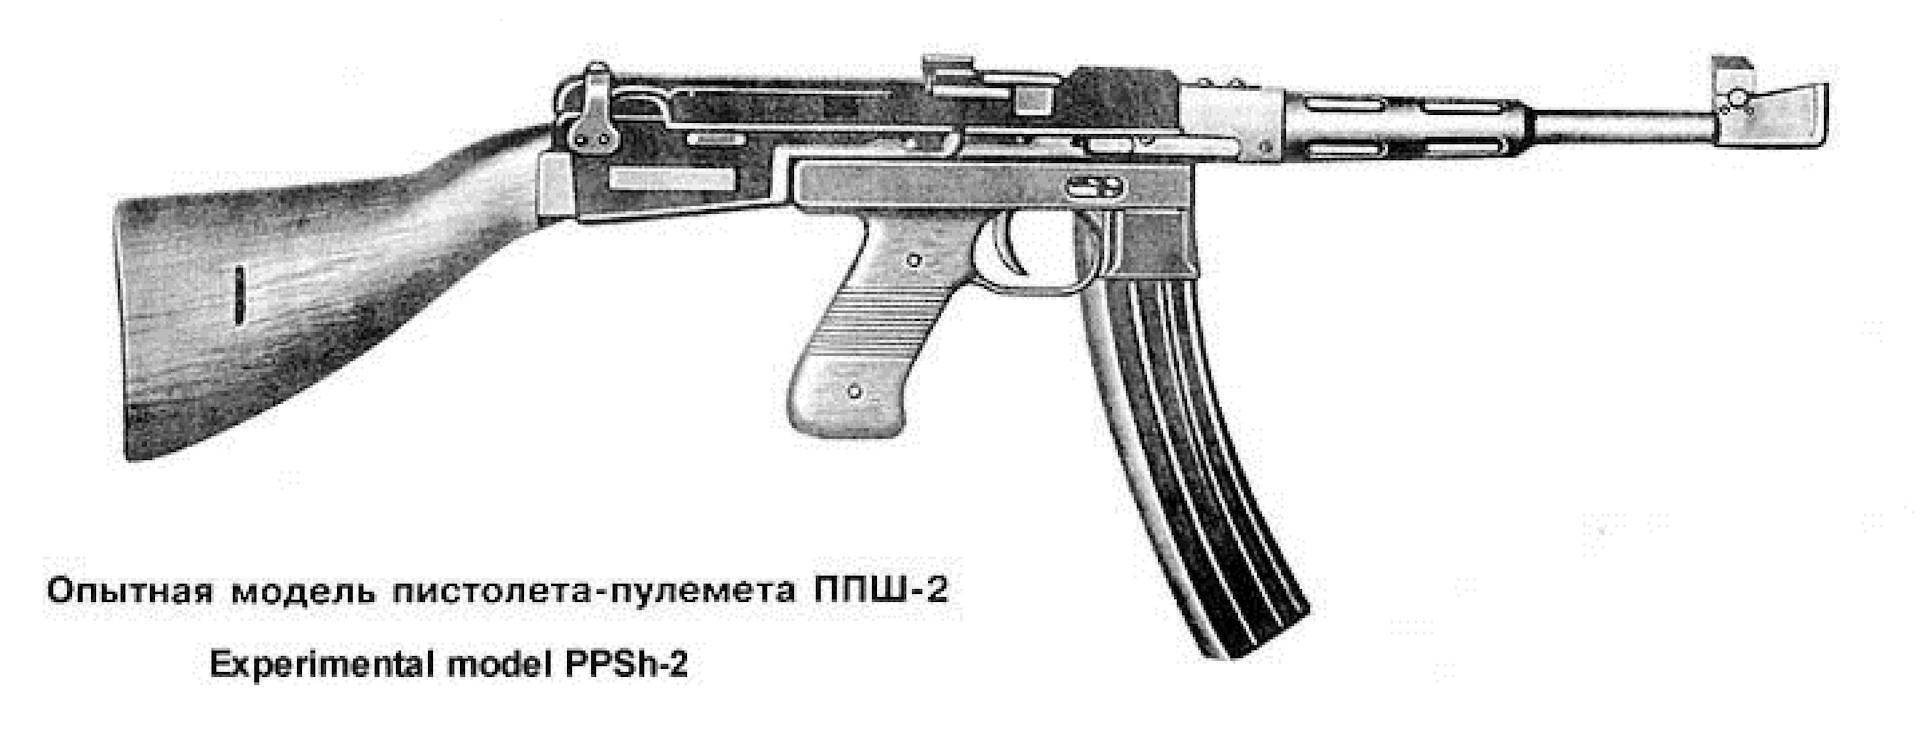 Пистолет-пулемет "cкорпион": чешский, тактико-технические характеристики (ттх), конструкция, модификации | криминальные авторитеты воры в законе |